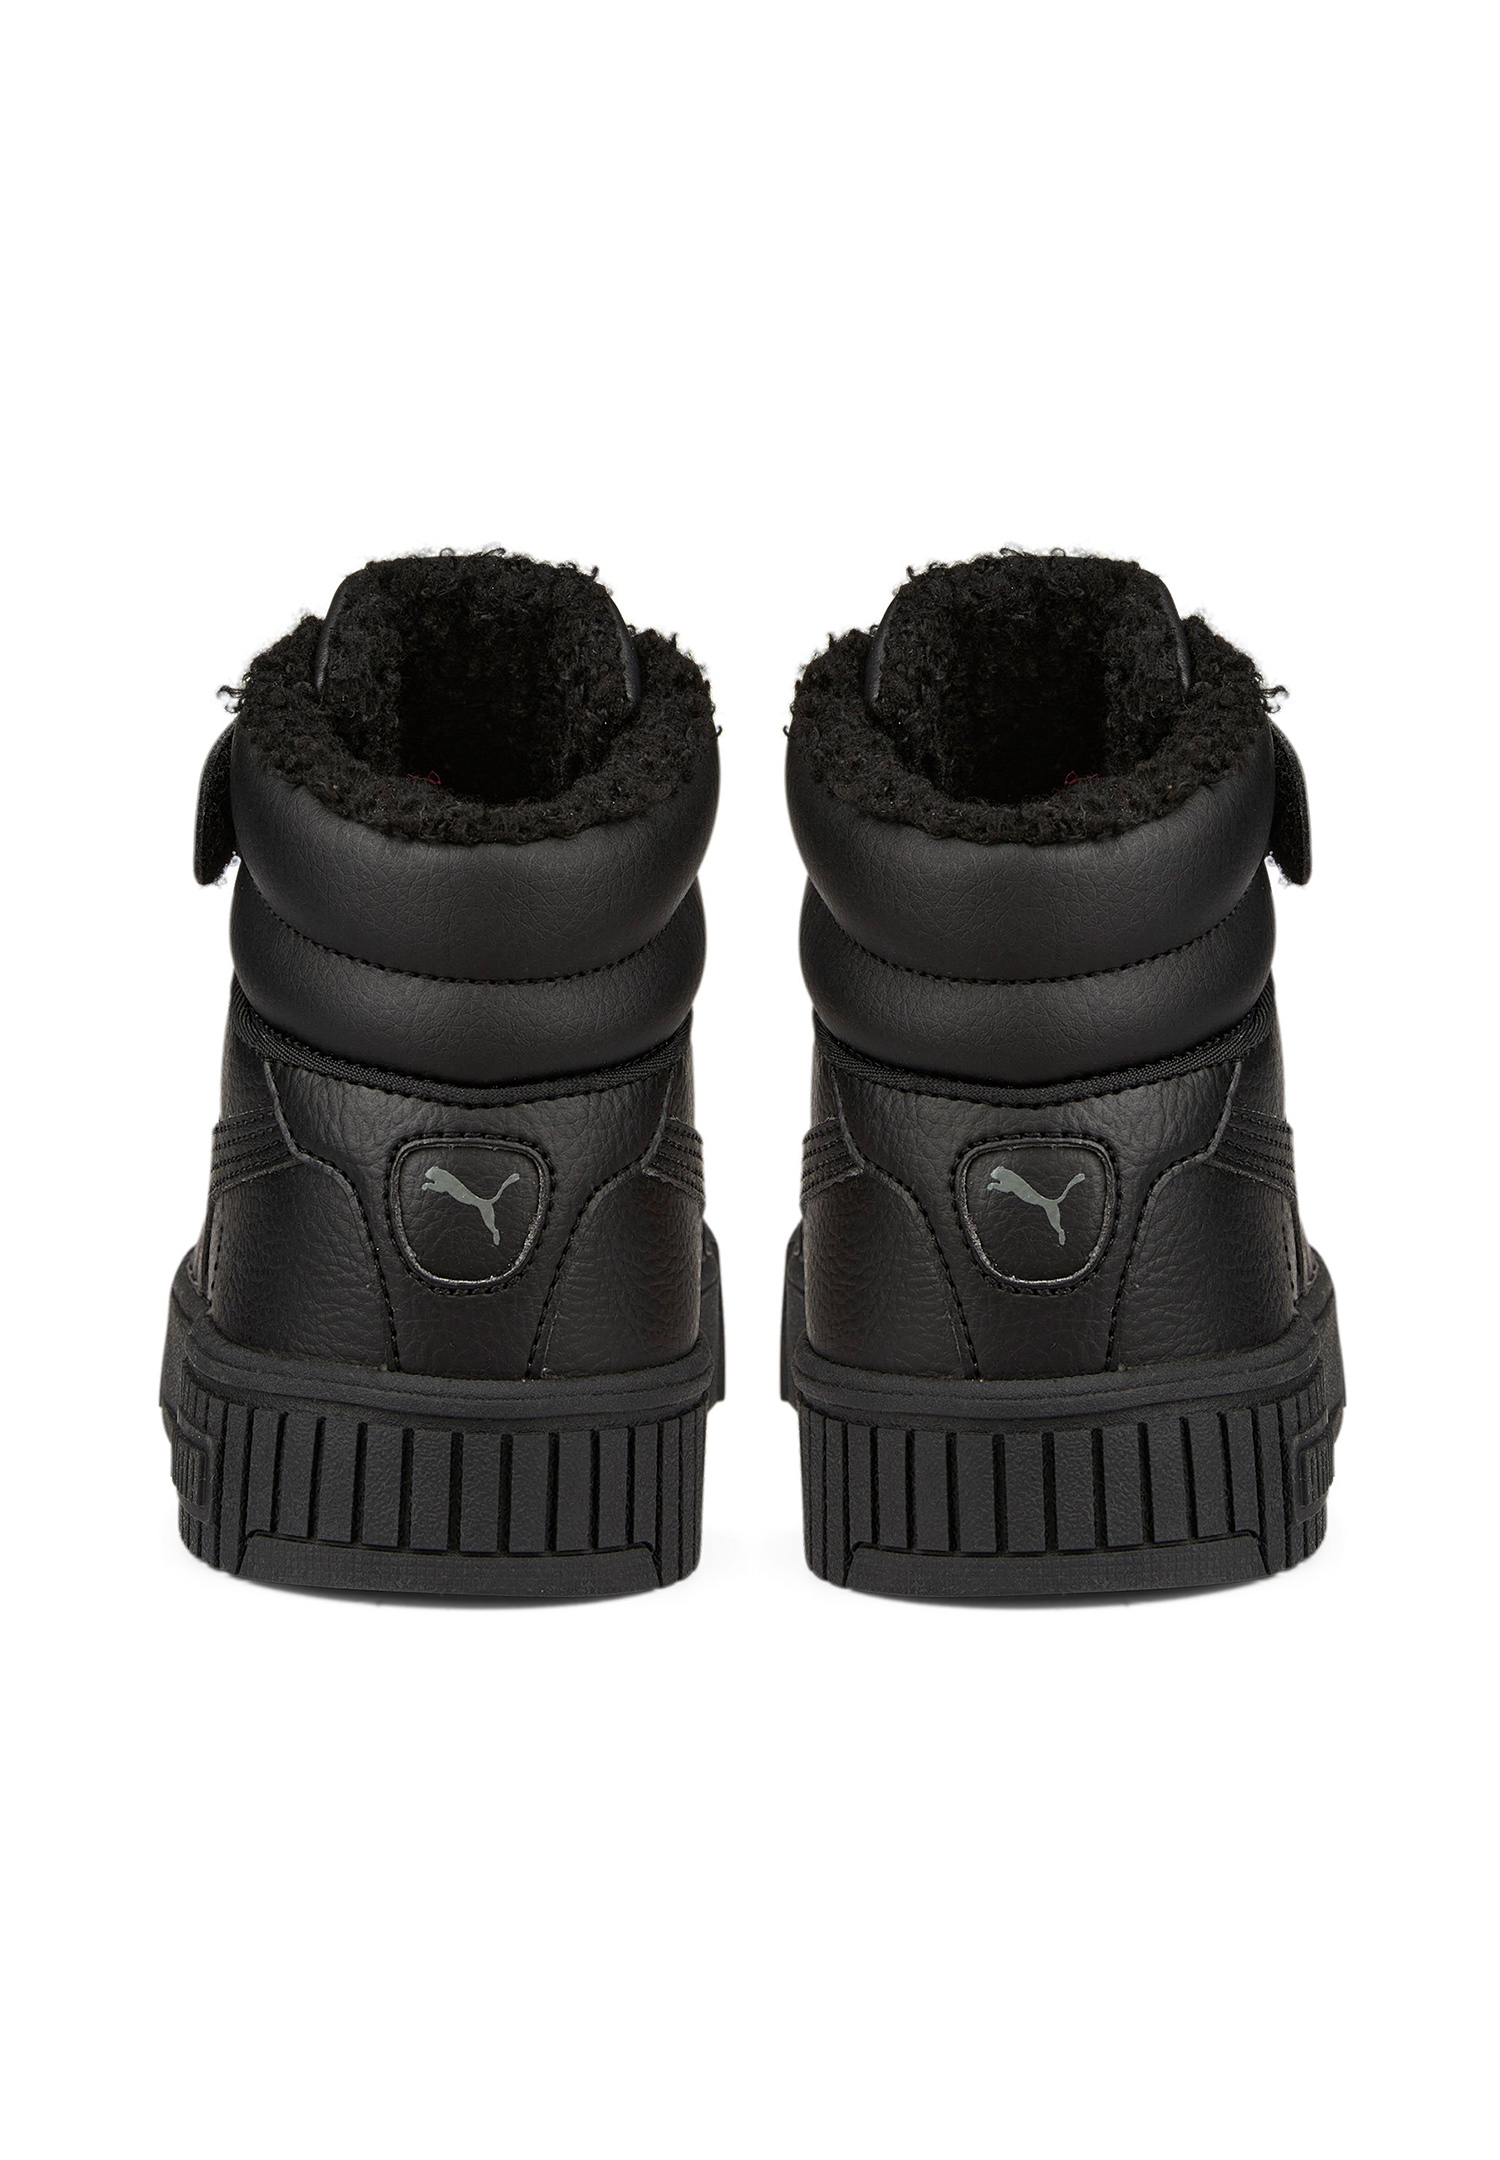 Puma Carina 2.0 Mid WTR PS Kinder Sneaker Winterschuhe Schuhe gefüttert 387382 schwarz 